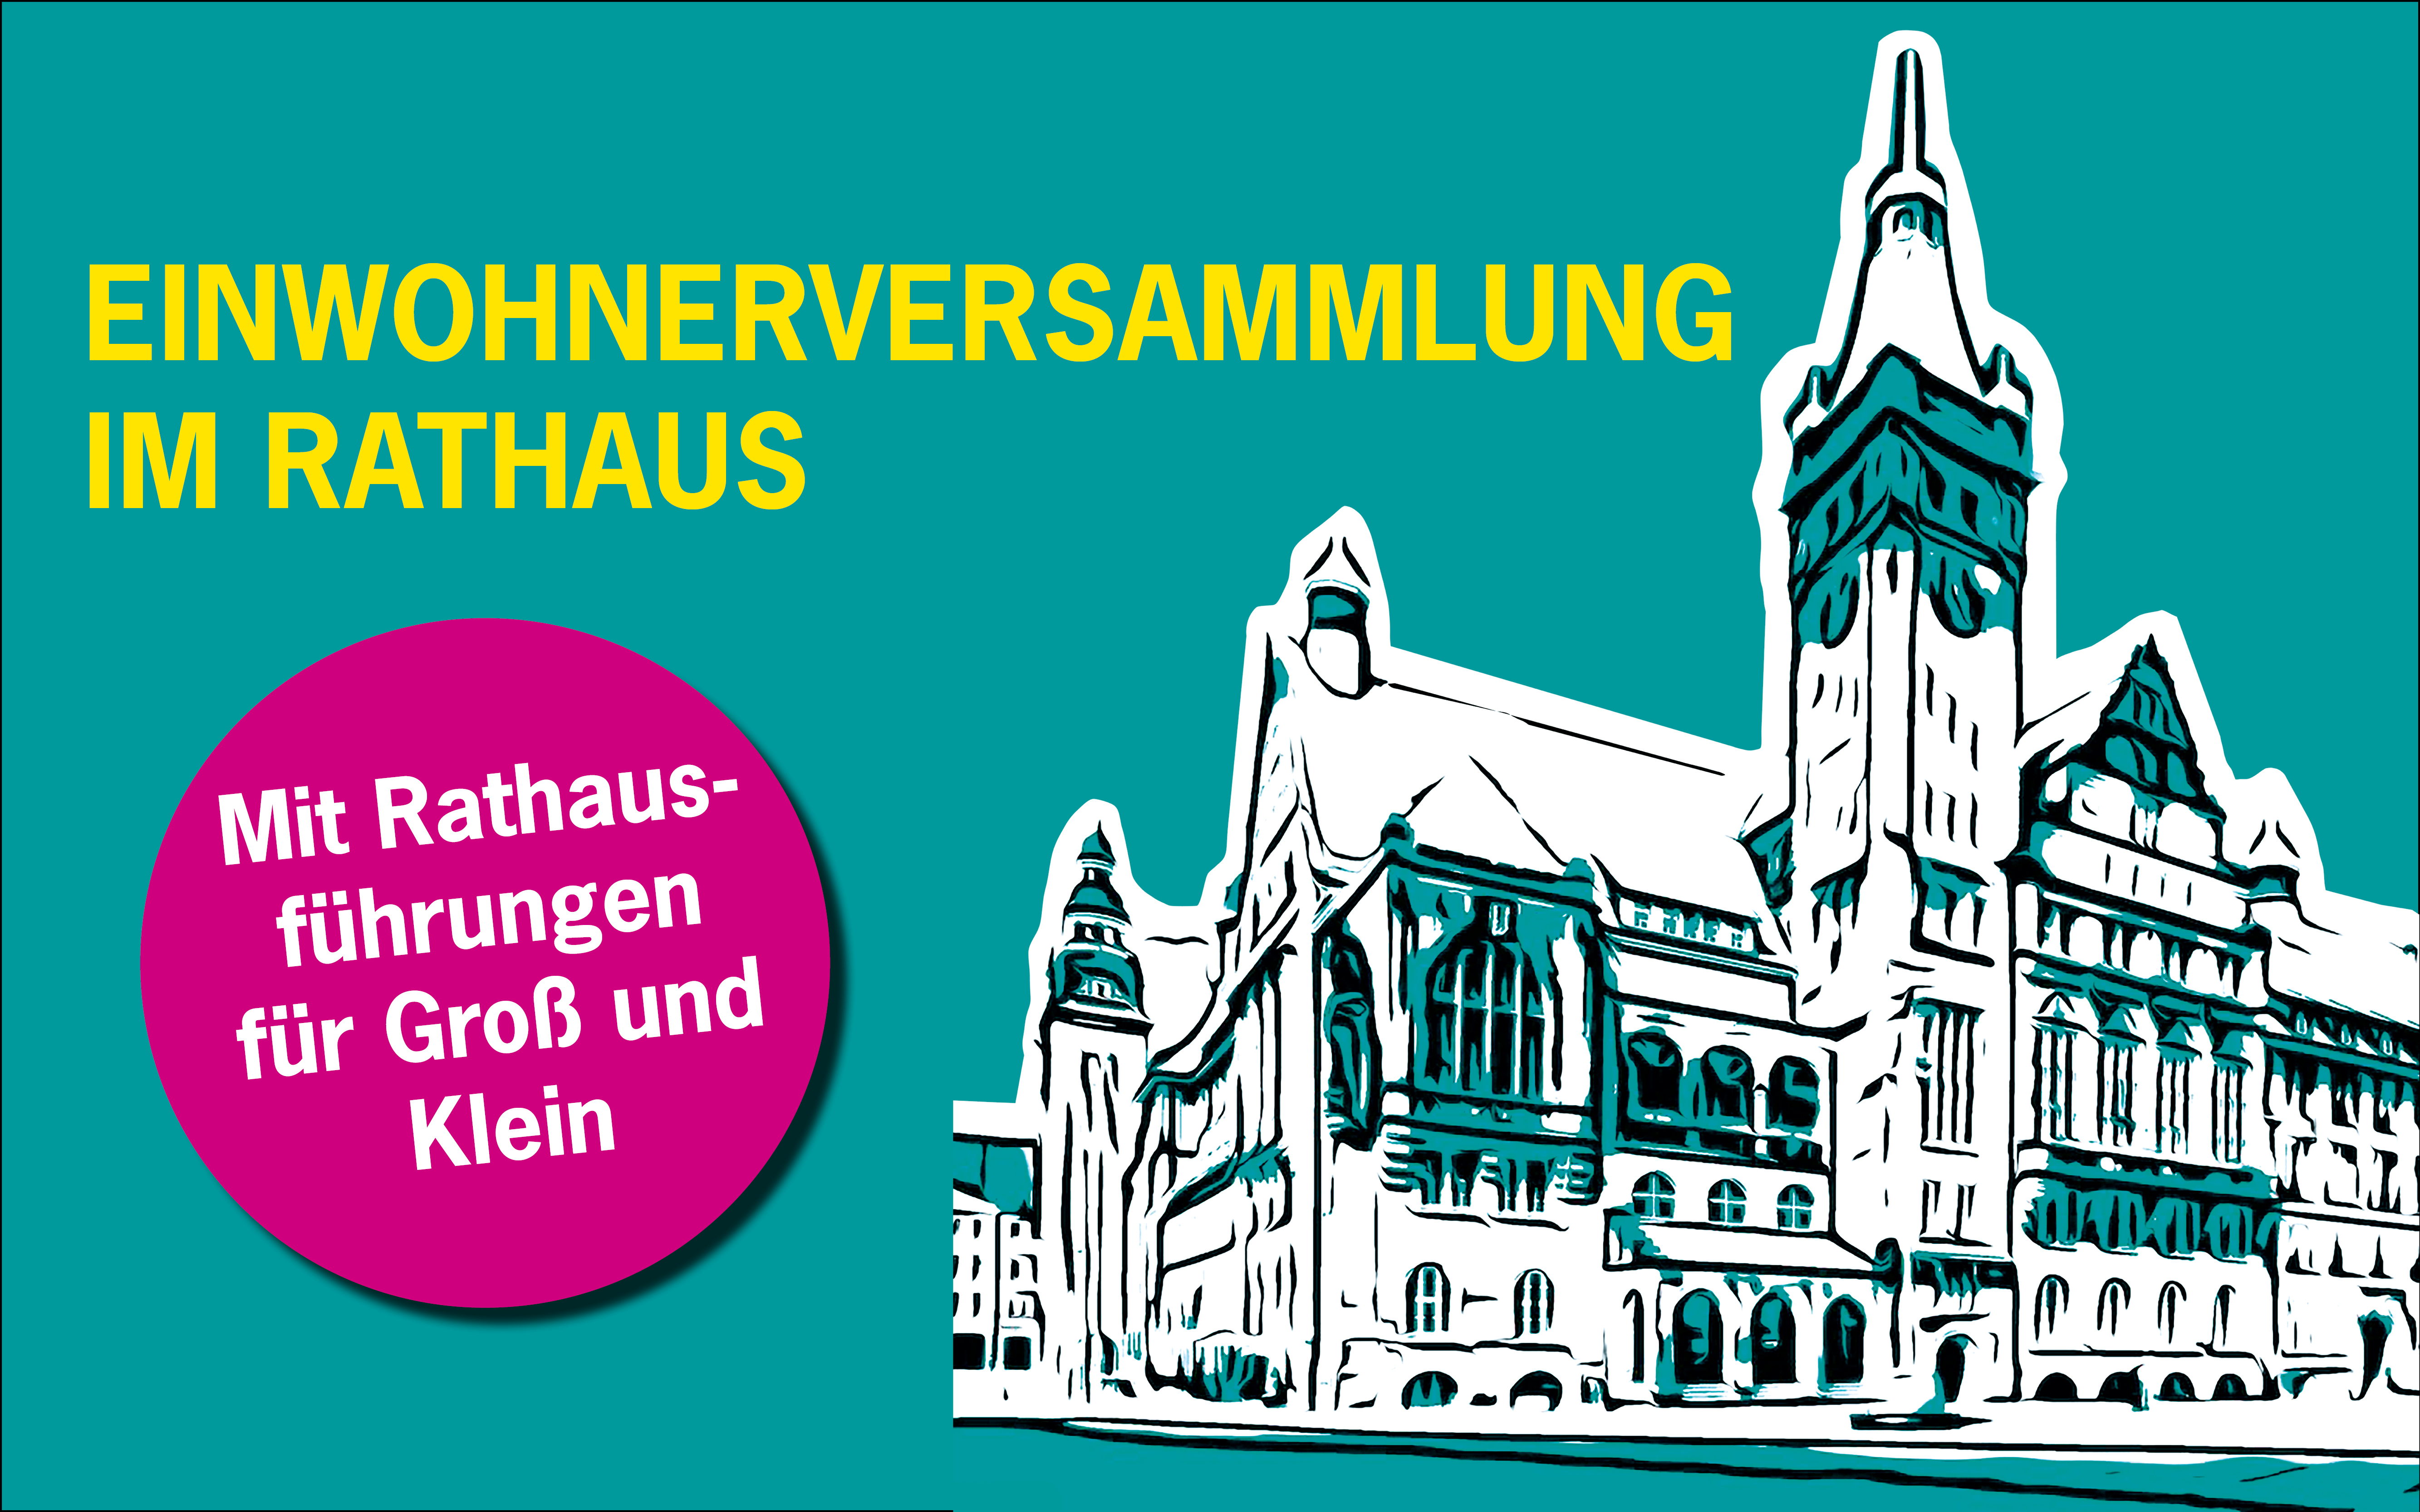 Am 11. Mai findet eine Einwohnerversammlung für das gesamte Stadtgebiet im Chemnitzer Rathaus statt.